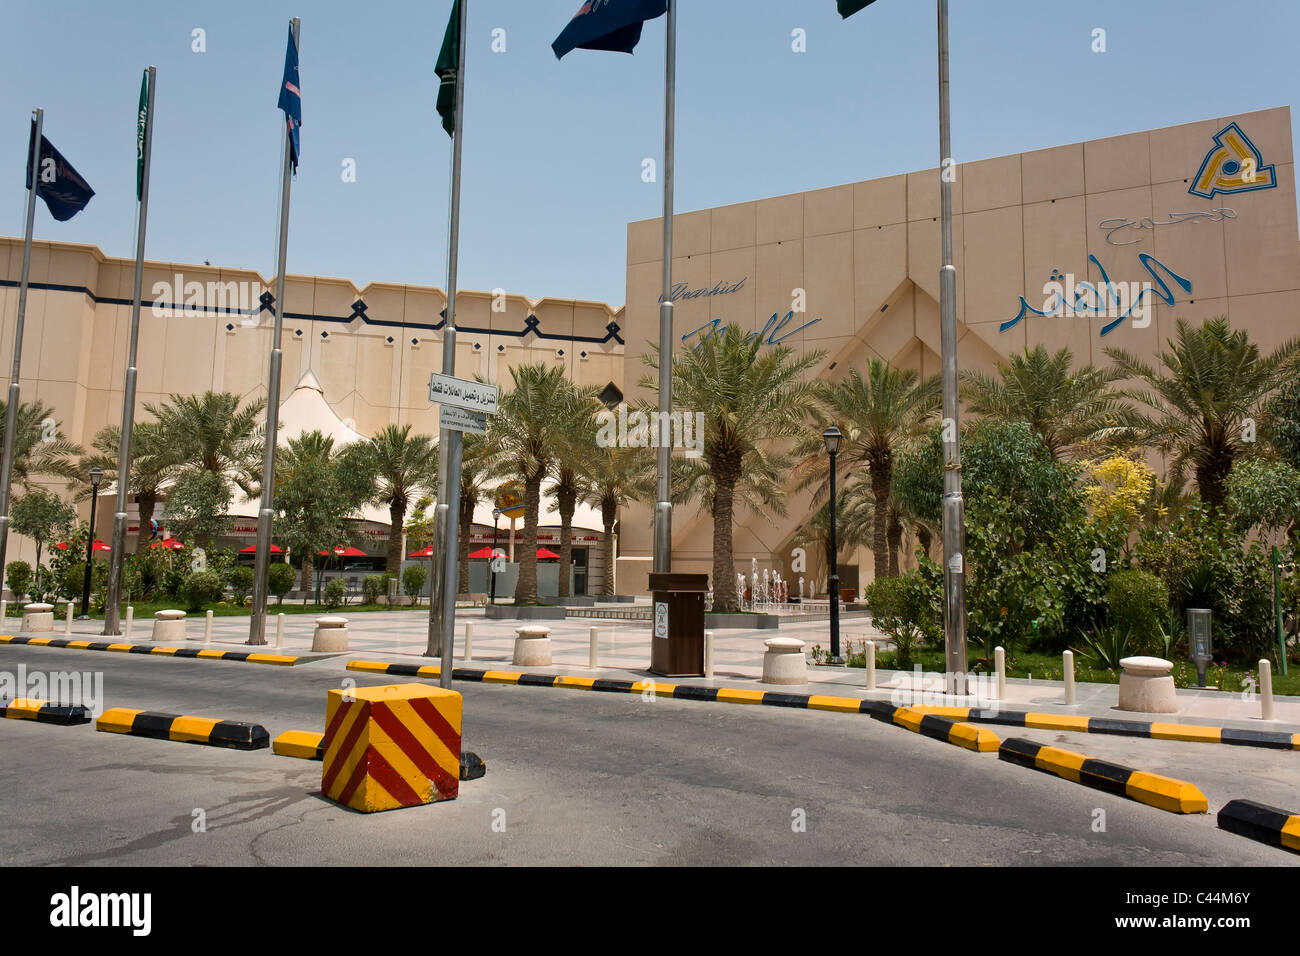 Al Rashed Mall, Khobar, Kingdom of Saudi Arabia. Stock Photo